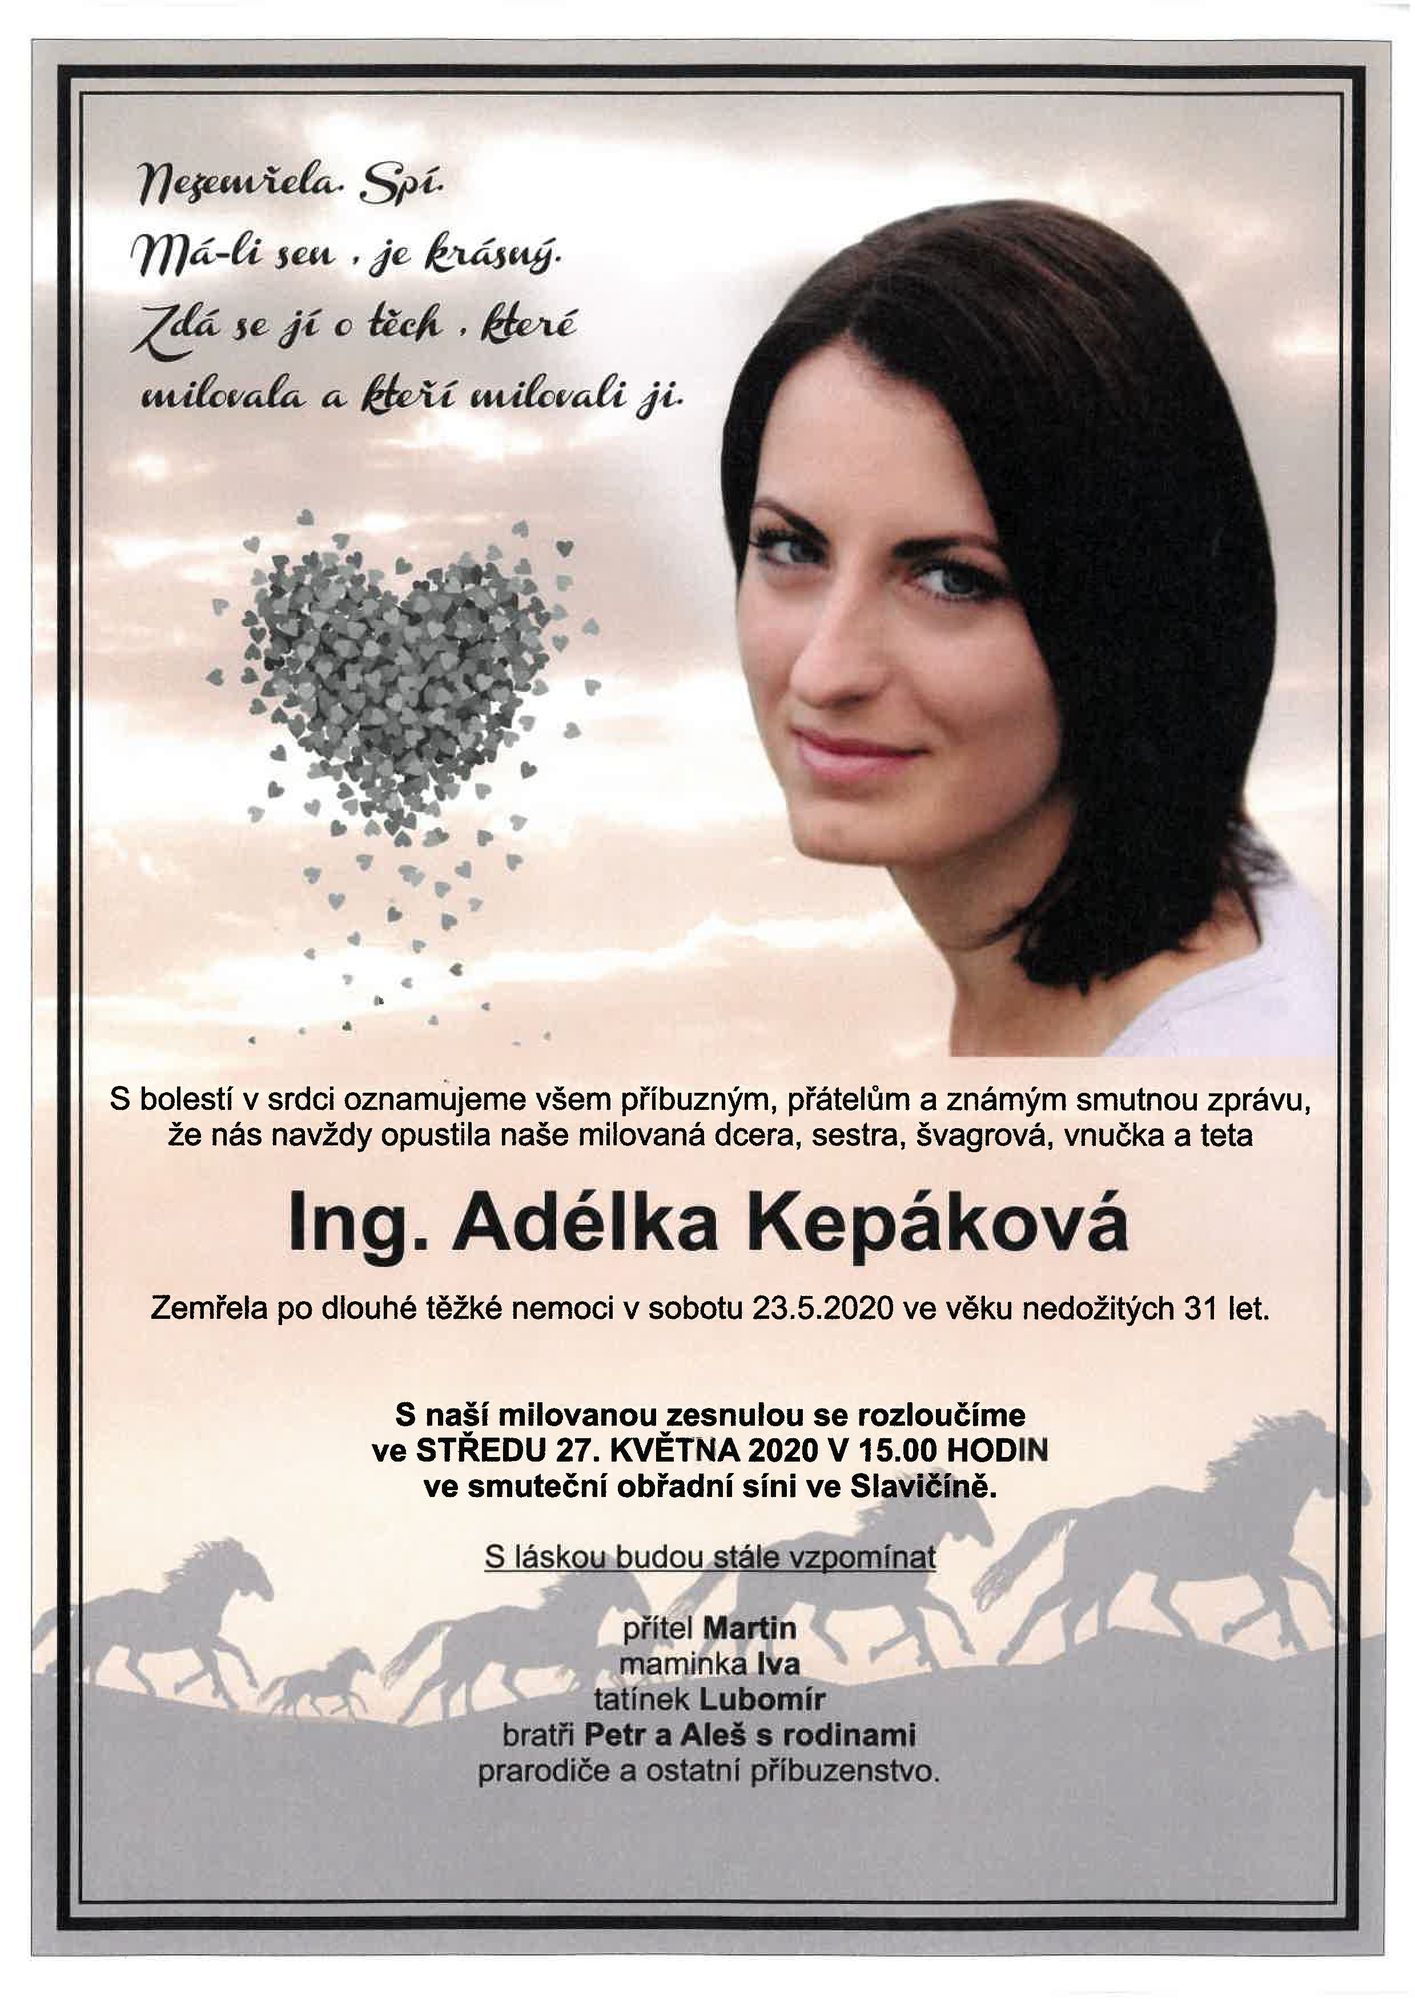 Ing. Adélka Kepáková